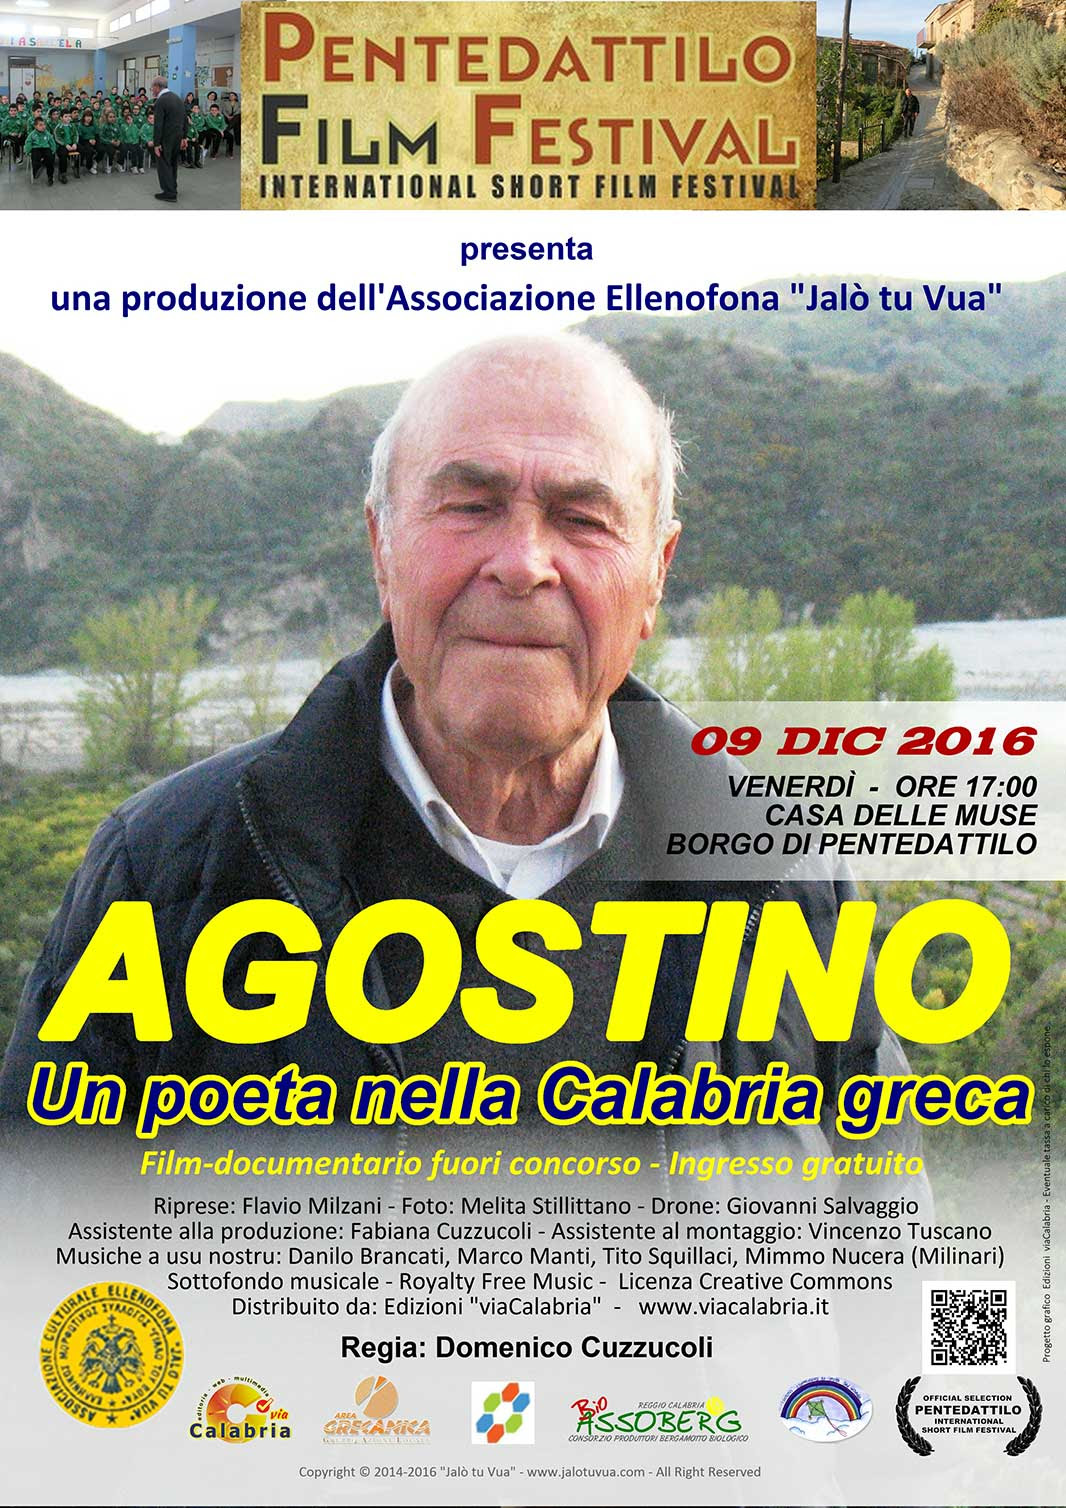 Agostino - un poeta nella Calabria greca